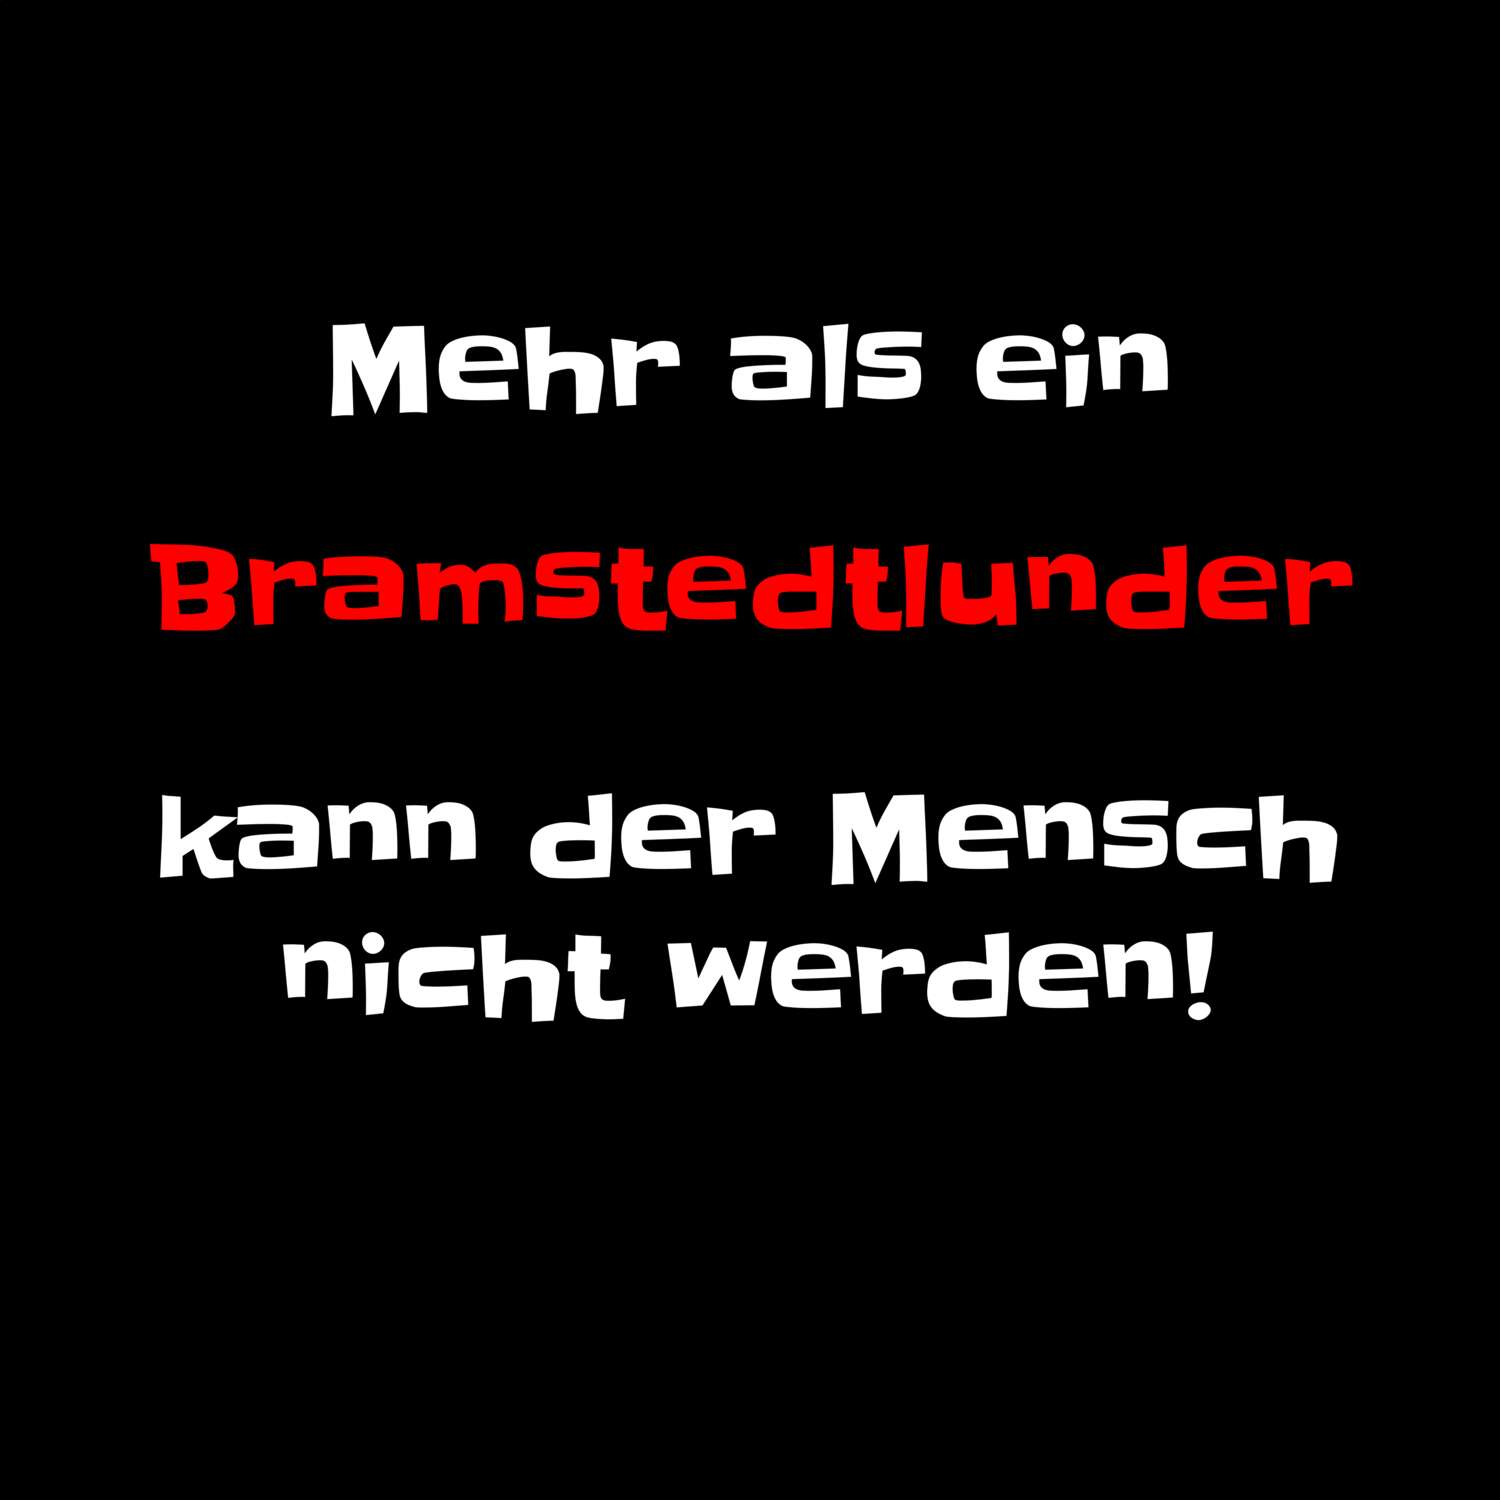 Bramstedtlund T-Shirt »Mehr als ein«